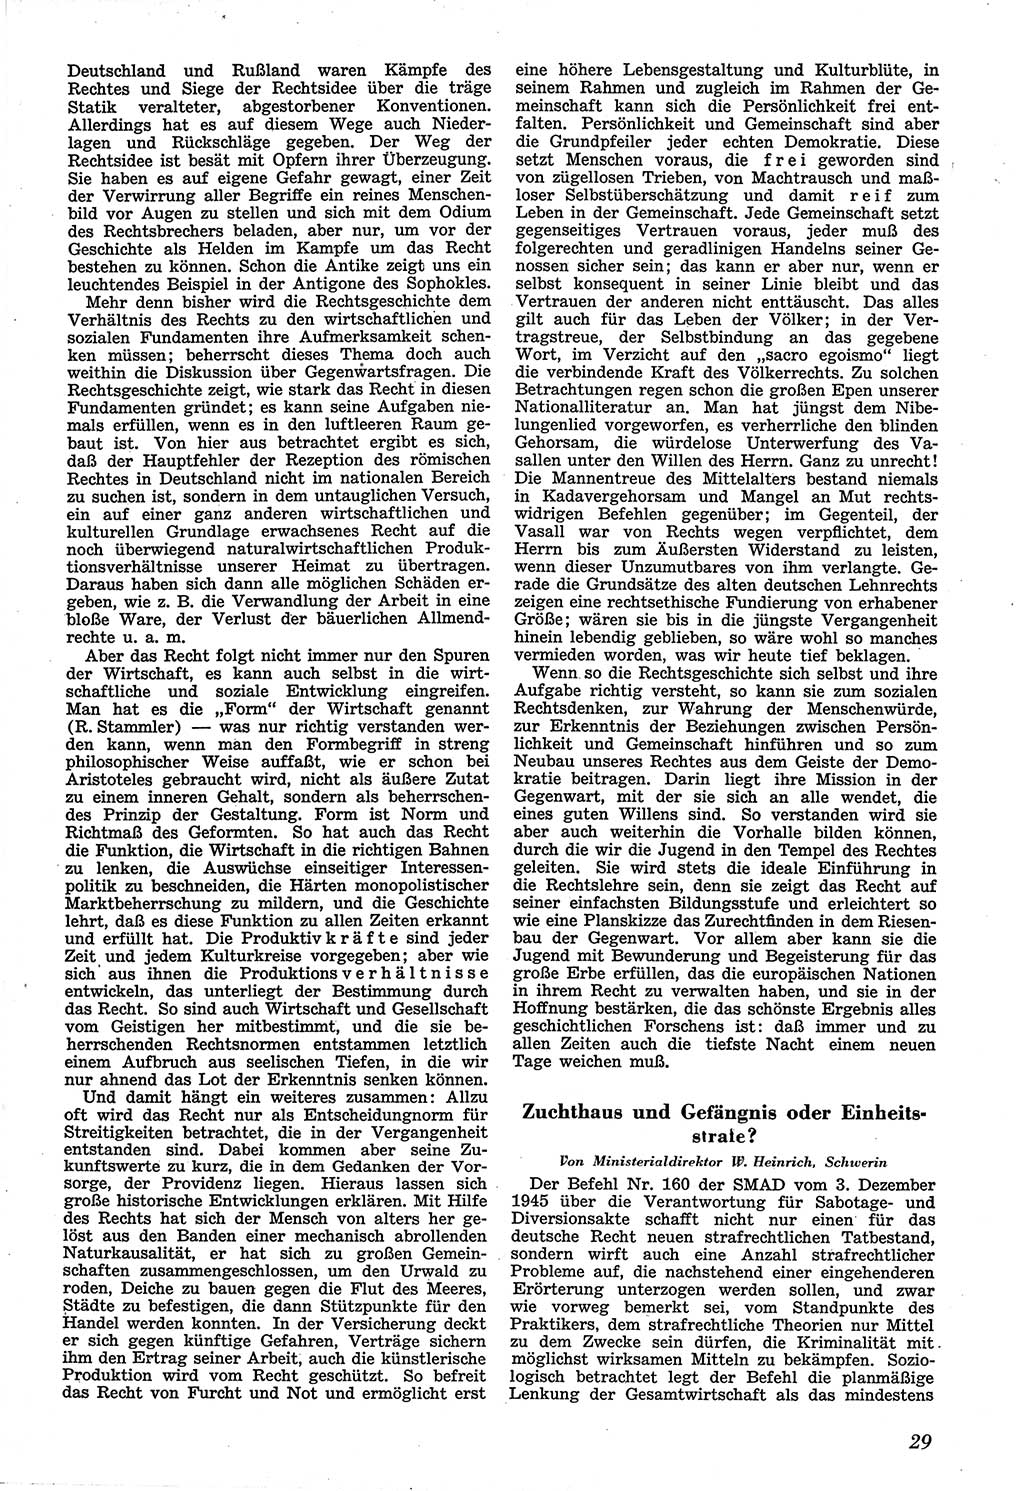 Neue Justiz (NJ), Zeitschrift für Recht und Rechtswissenschaft [Sowjetische Besatzungszone (SBZ) Deutschland], 1. Jahrgang 1947, Seite 29 (NJ SBZ Dtl. 1947, S. 29)